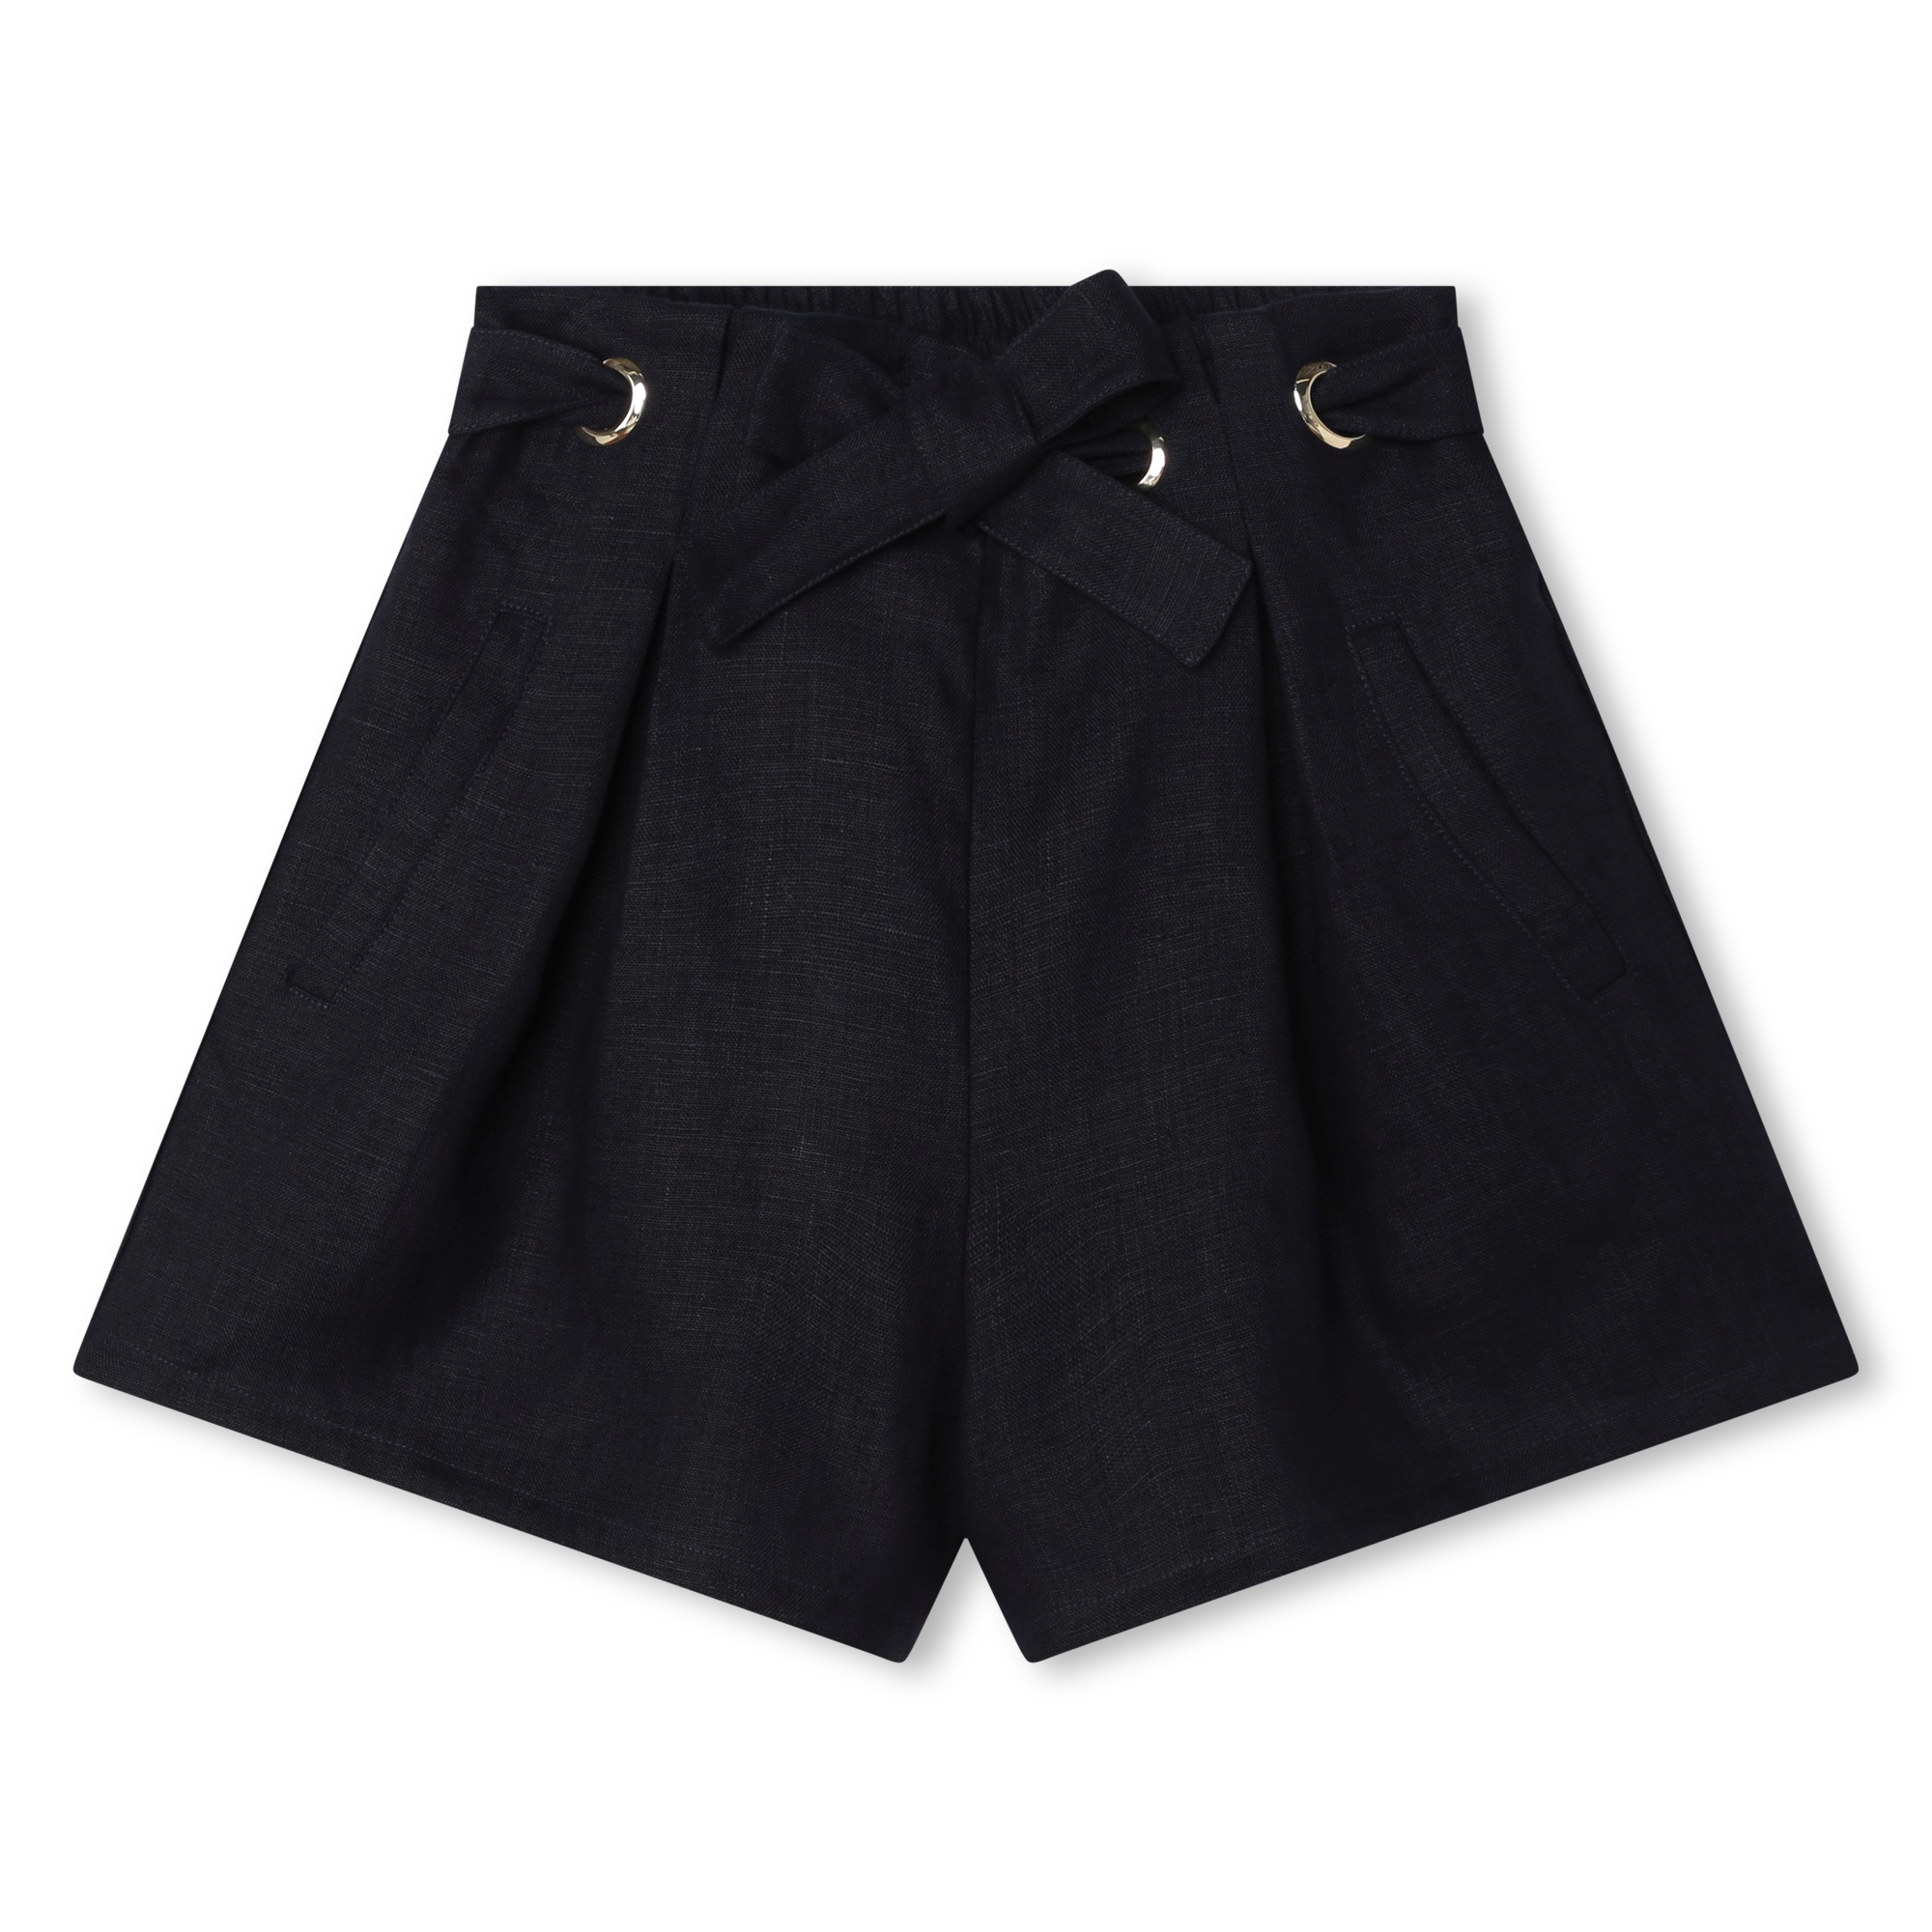 Shorts con cintura in lino CHLOE Per BAMBINA